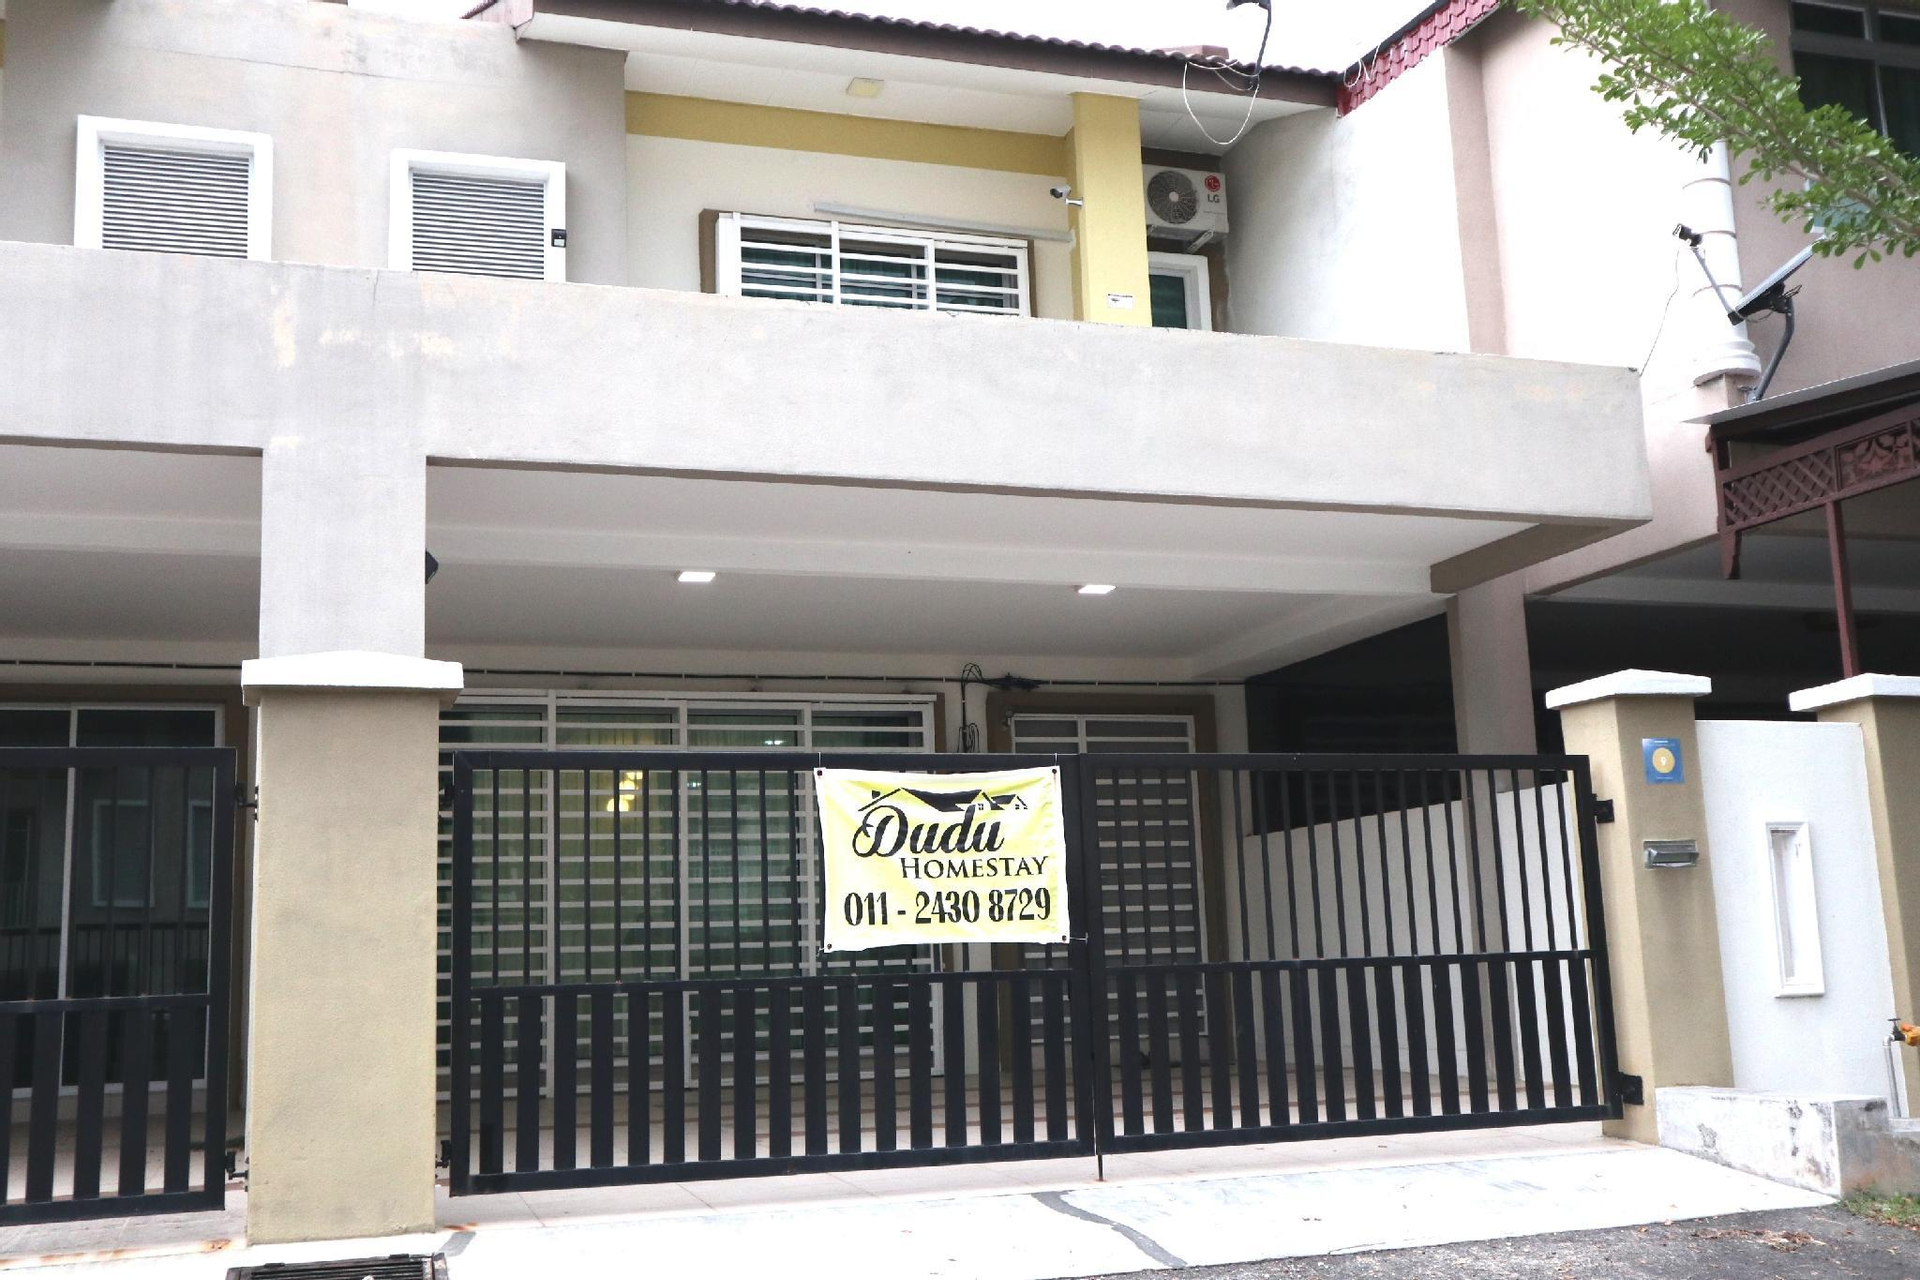 Exterior & Views, Dudu Guesthouse, Kuala Kangsar